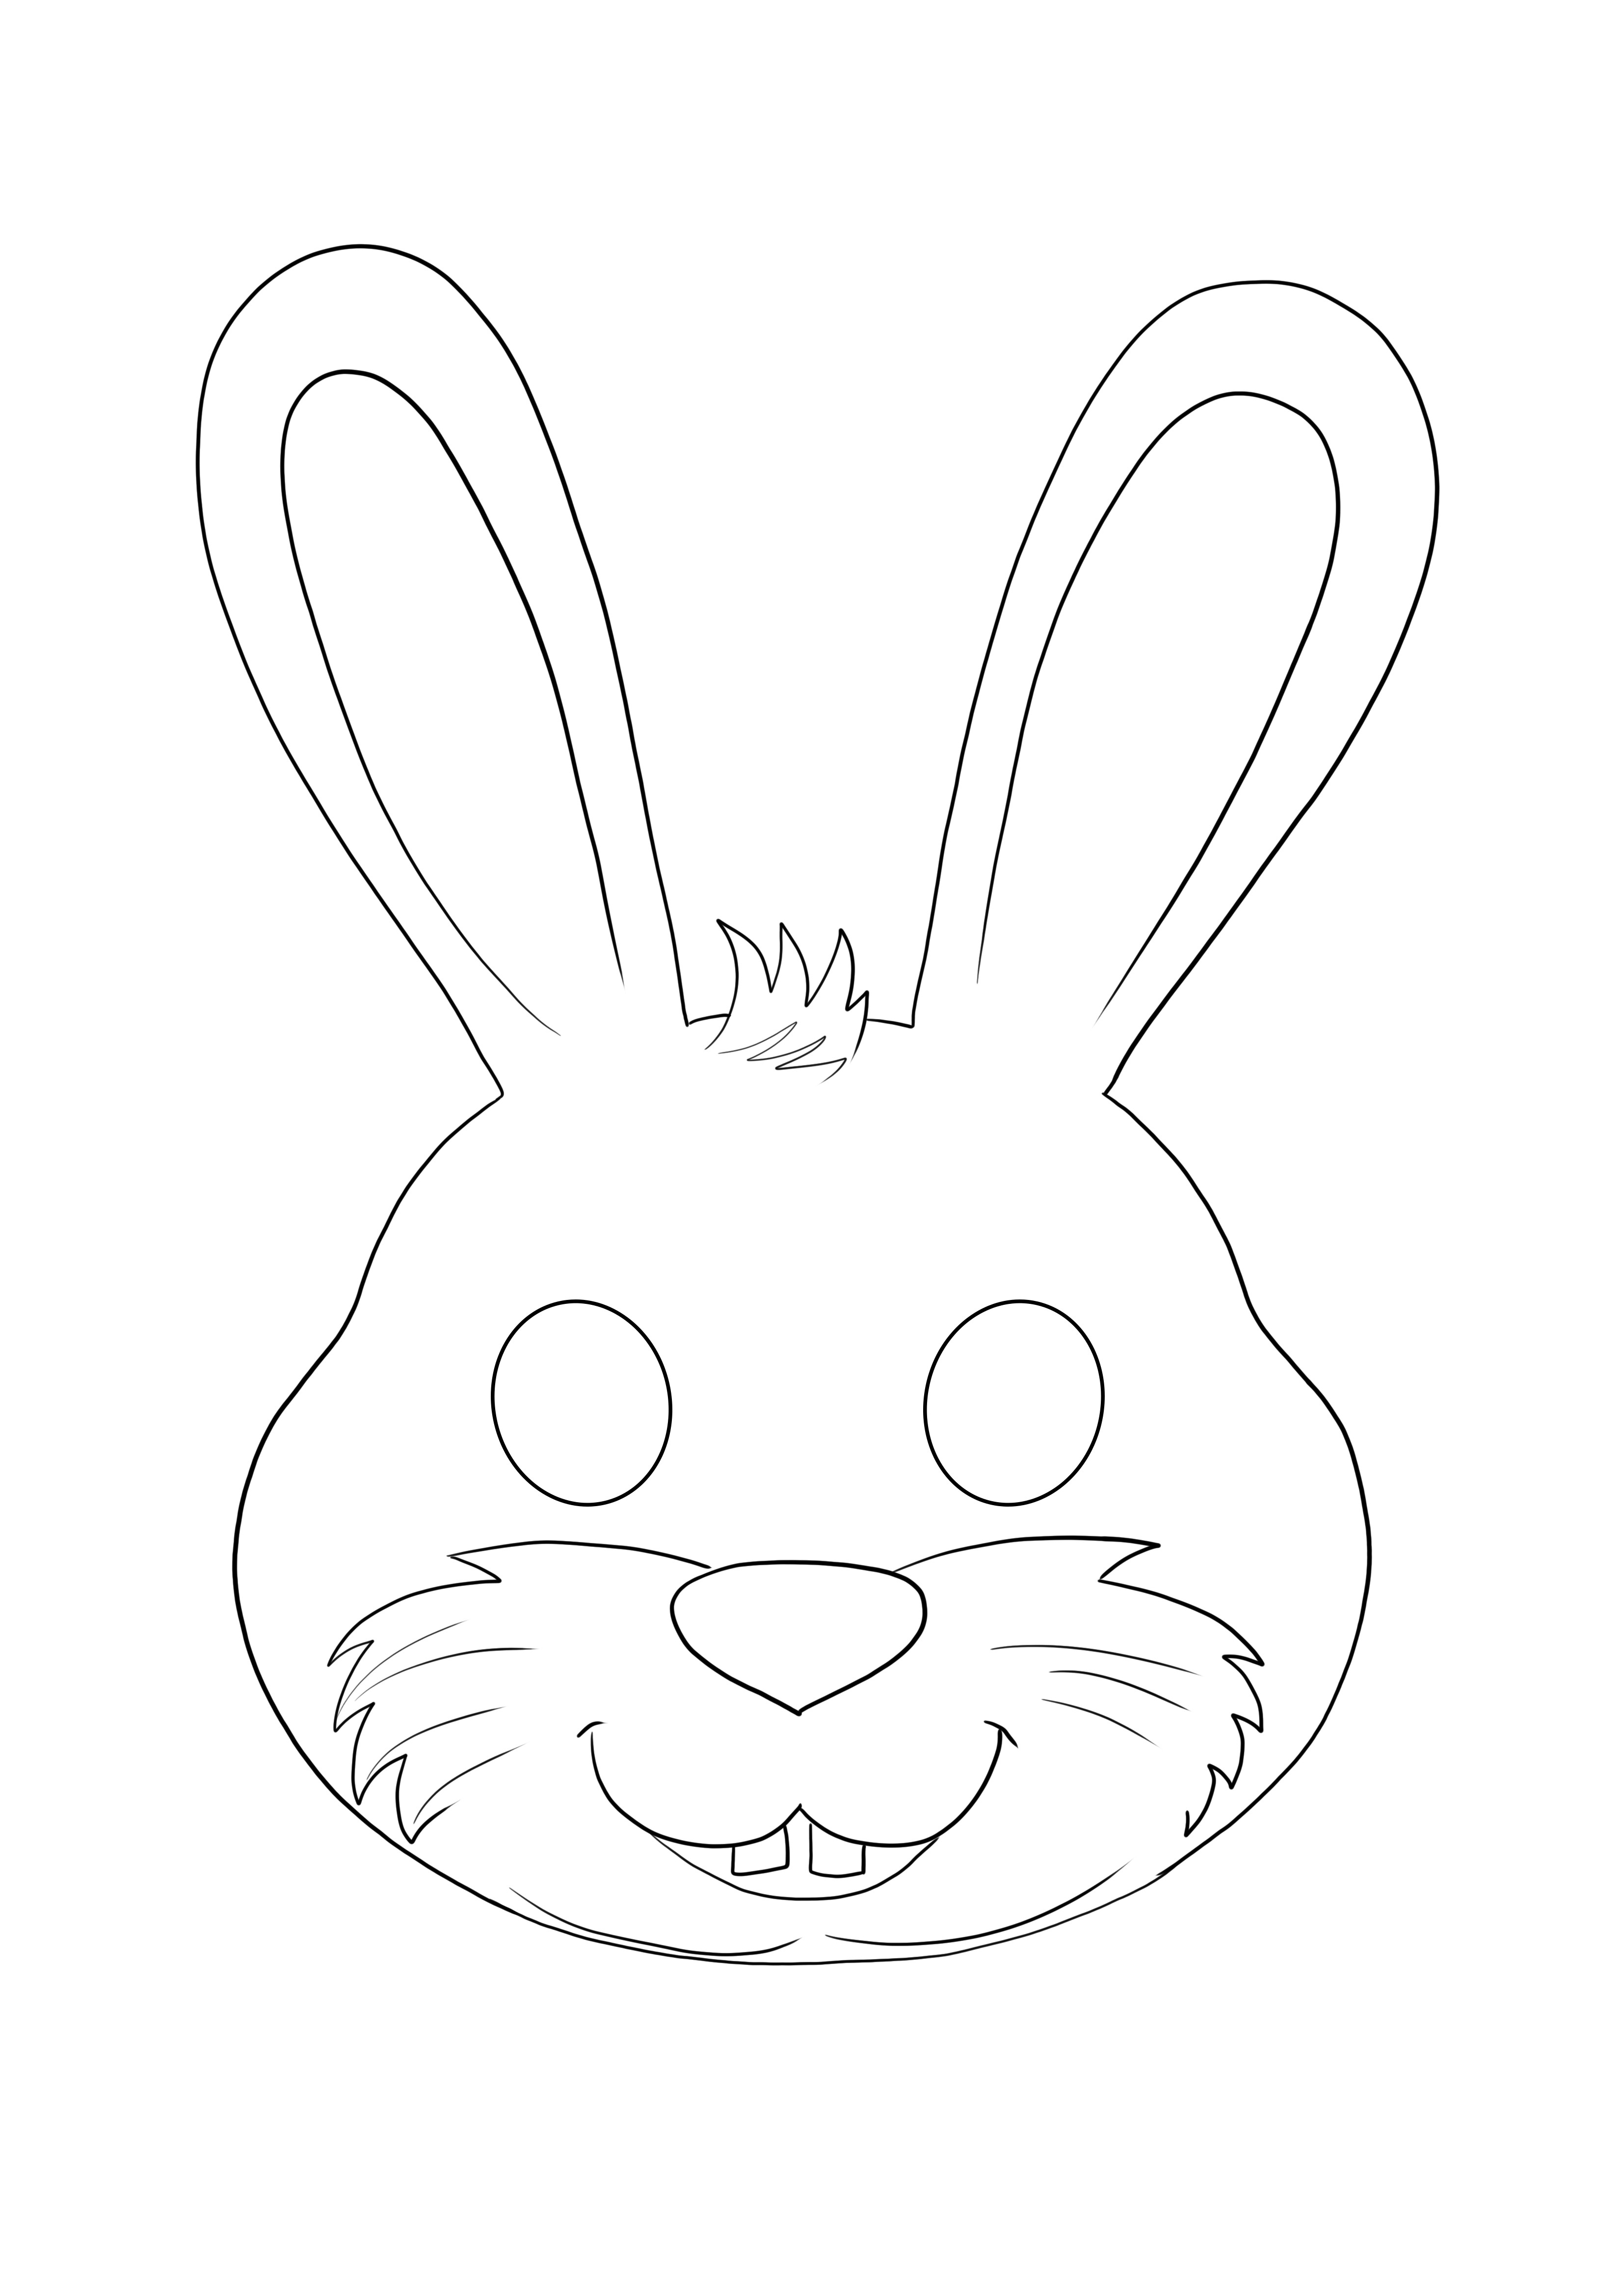 Maschera di coniglio divertente: colorazione semplice e senza stampa